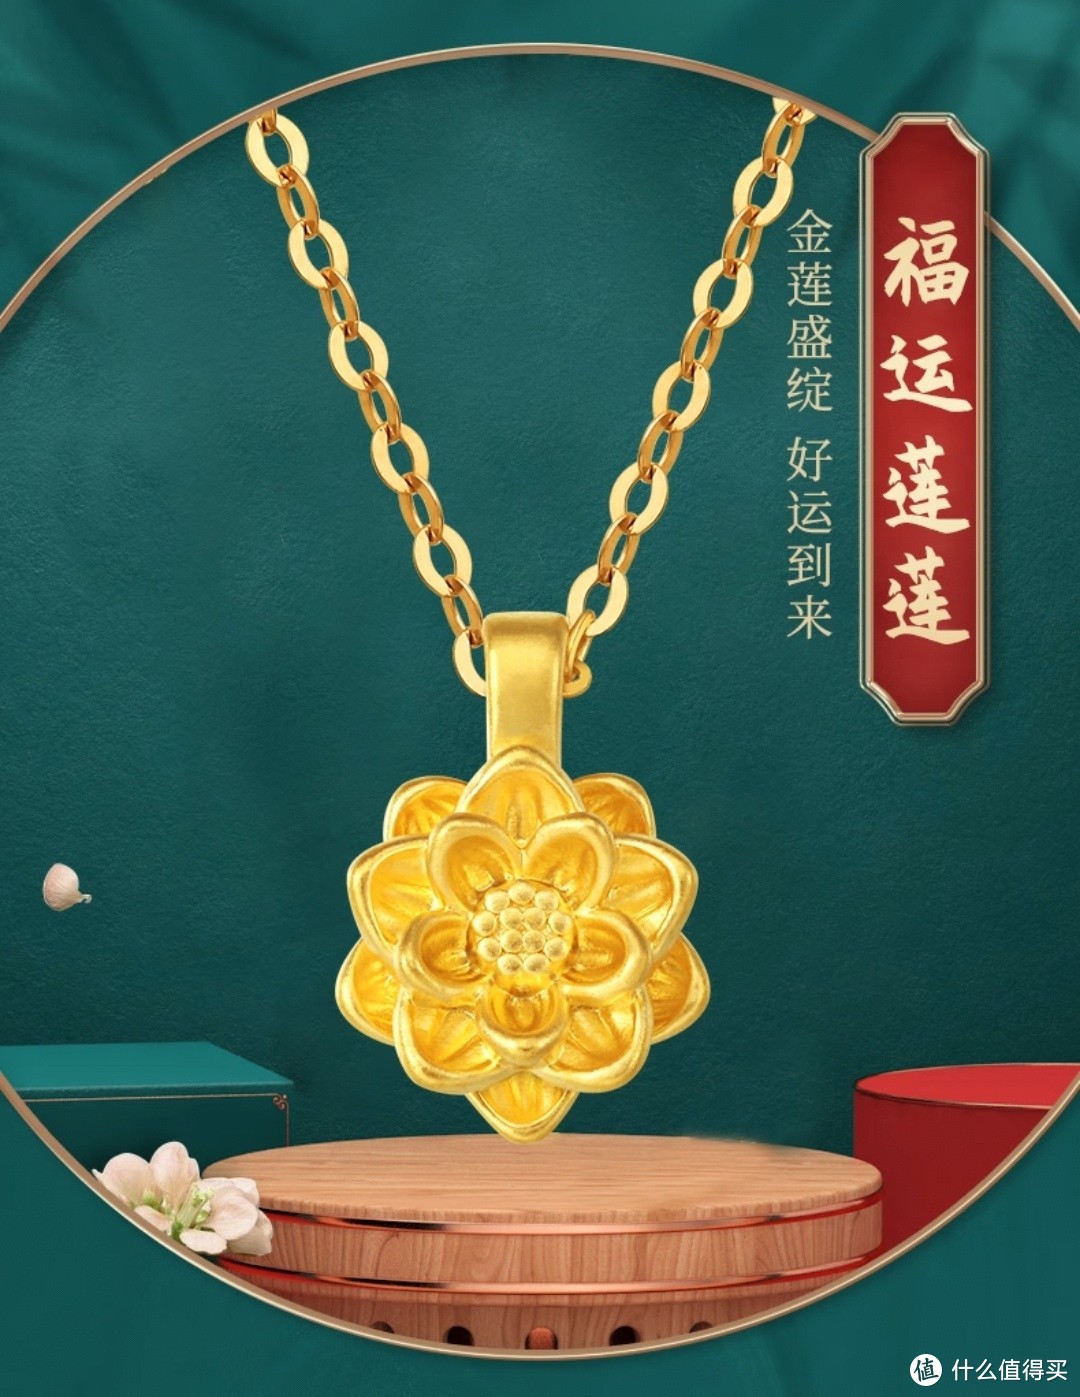 情人节礼物首选黄金饰品，中国黄金的足金莲花吊坠真可谓是超凡脱俗，富贵典雅气质的代表。